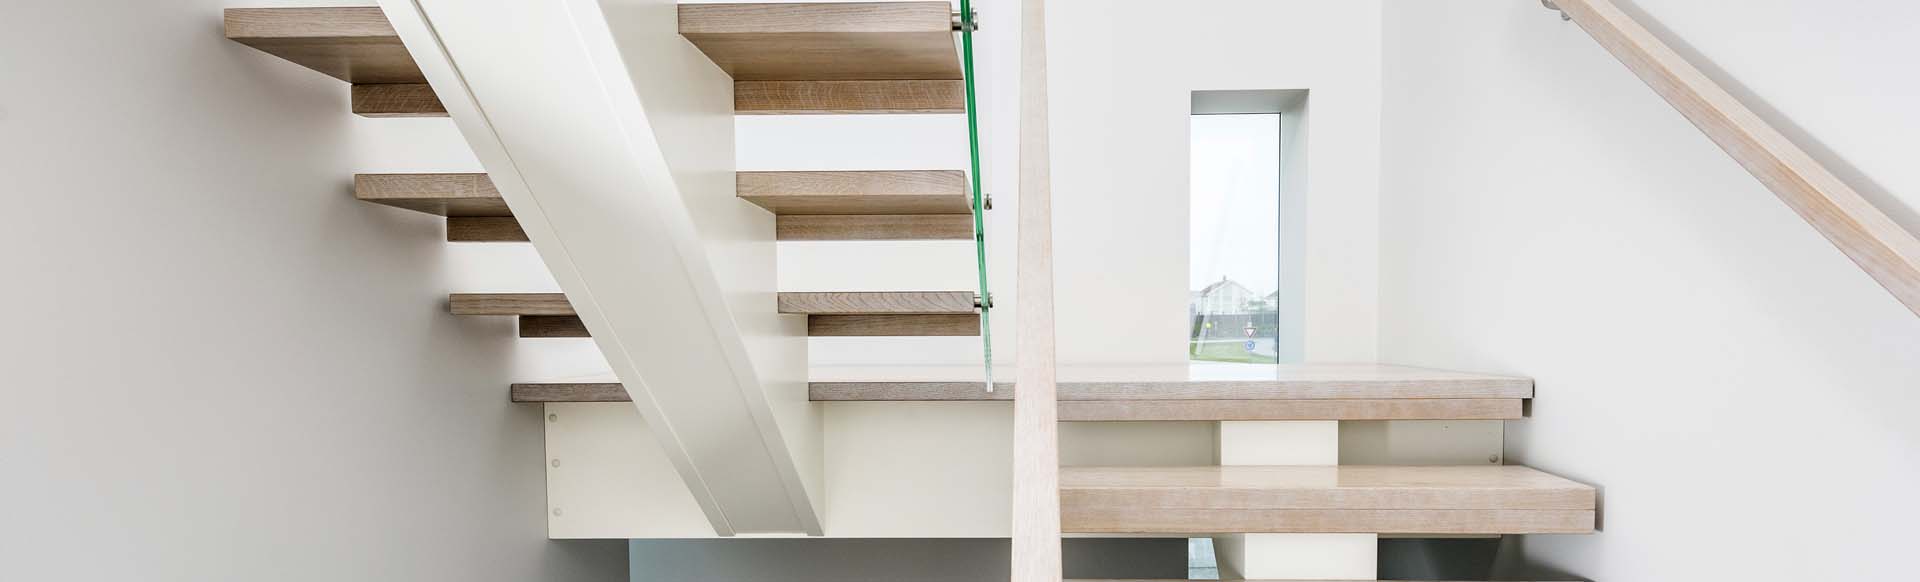 Erøyvik Trevare - Moderne trapper